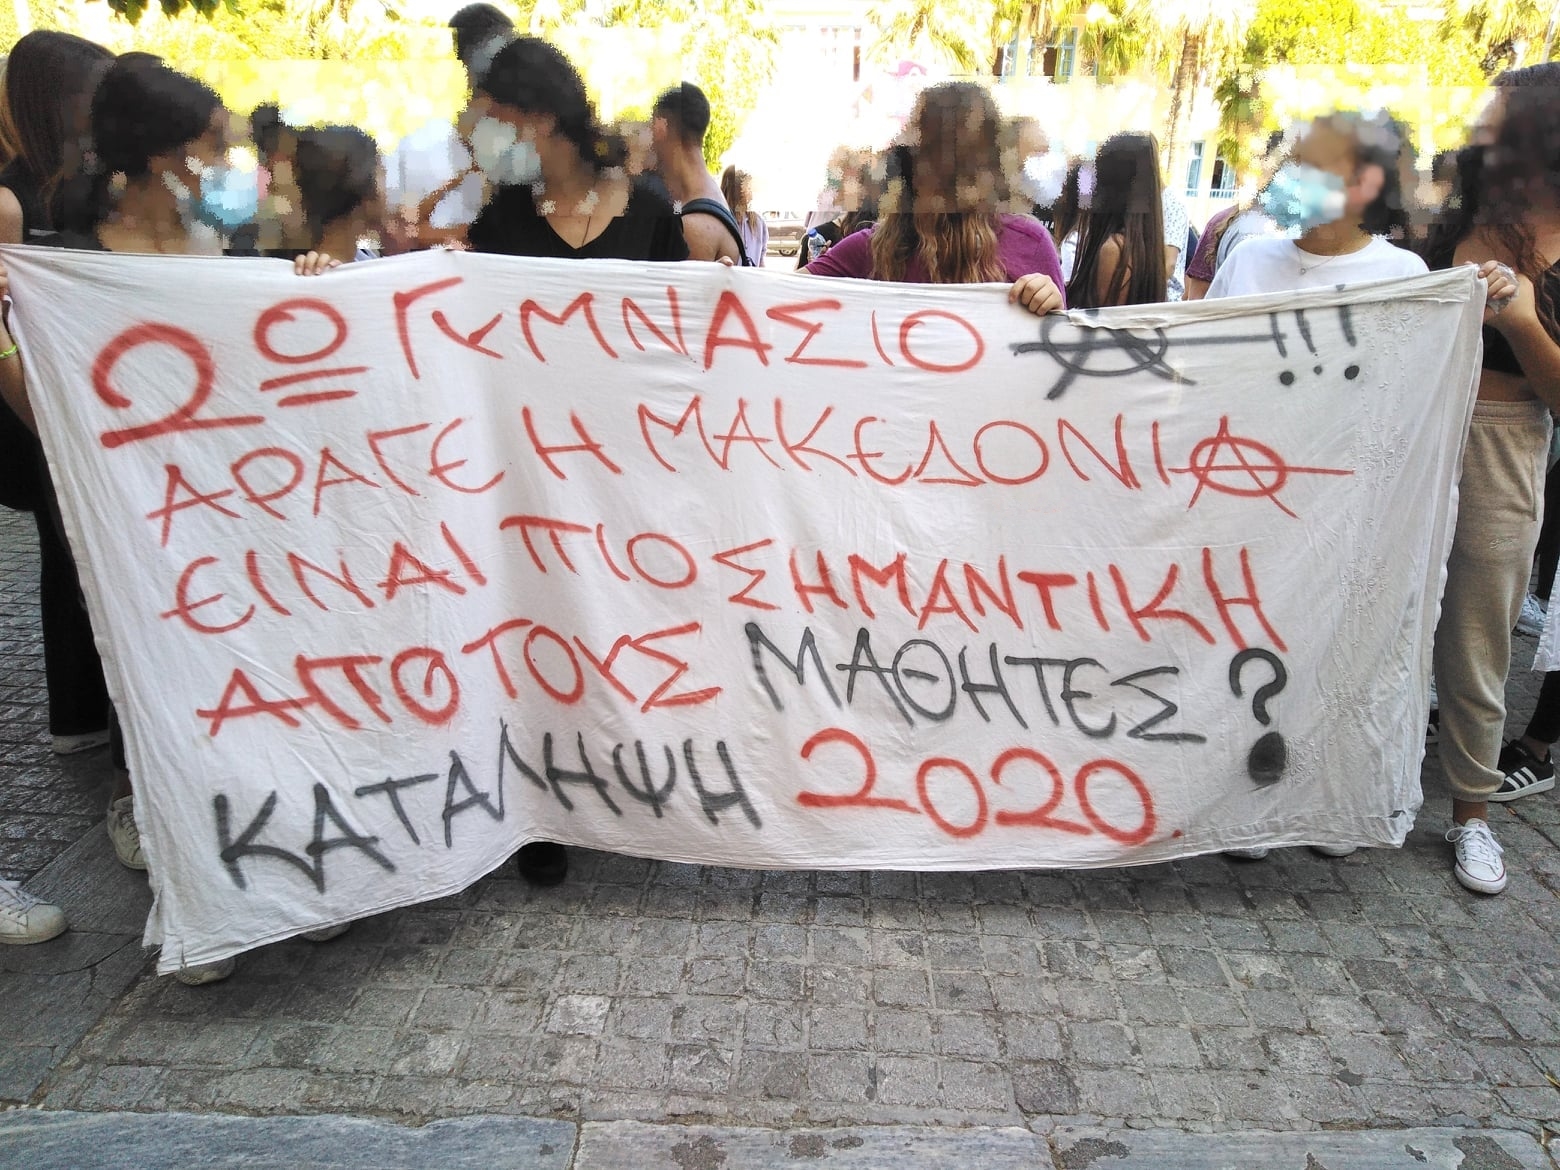 πορεία αναρχικών μαθητών στο Ναύπλιο μετά τις καταλήψεις του Σεπτεμβρίου